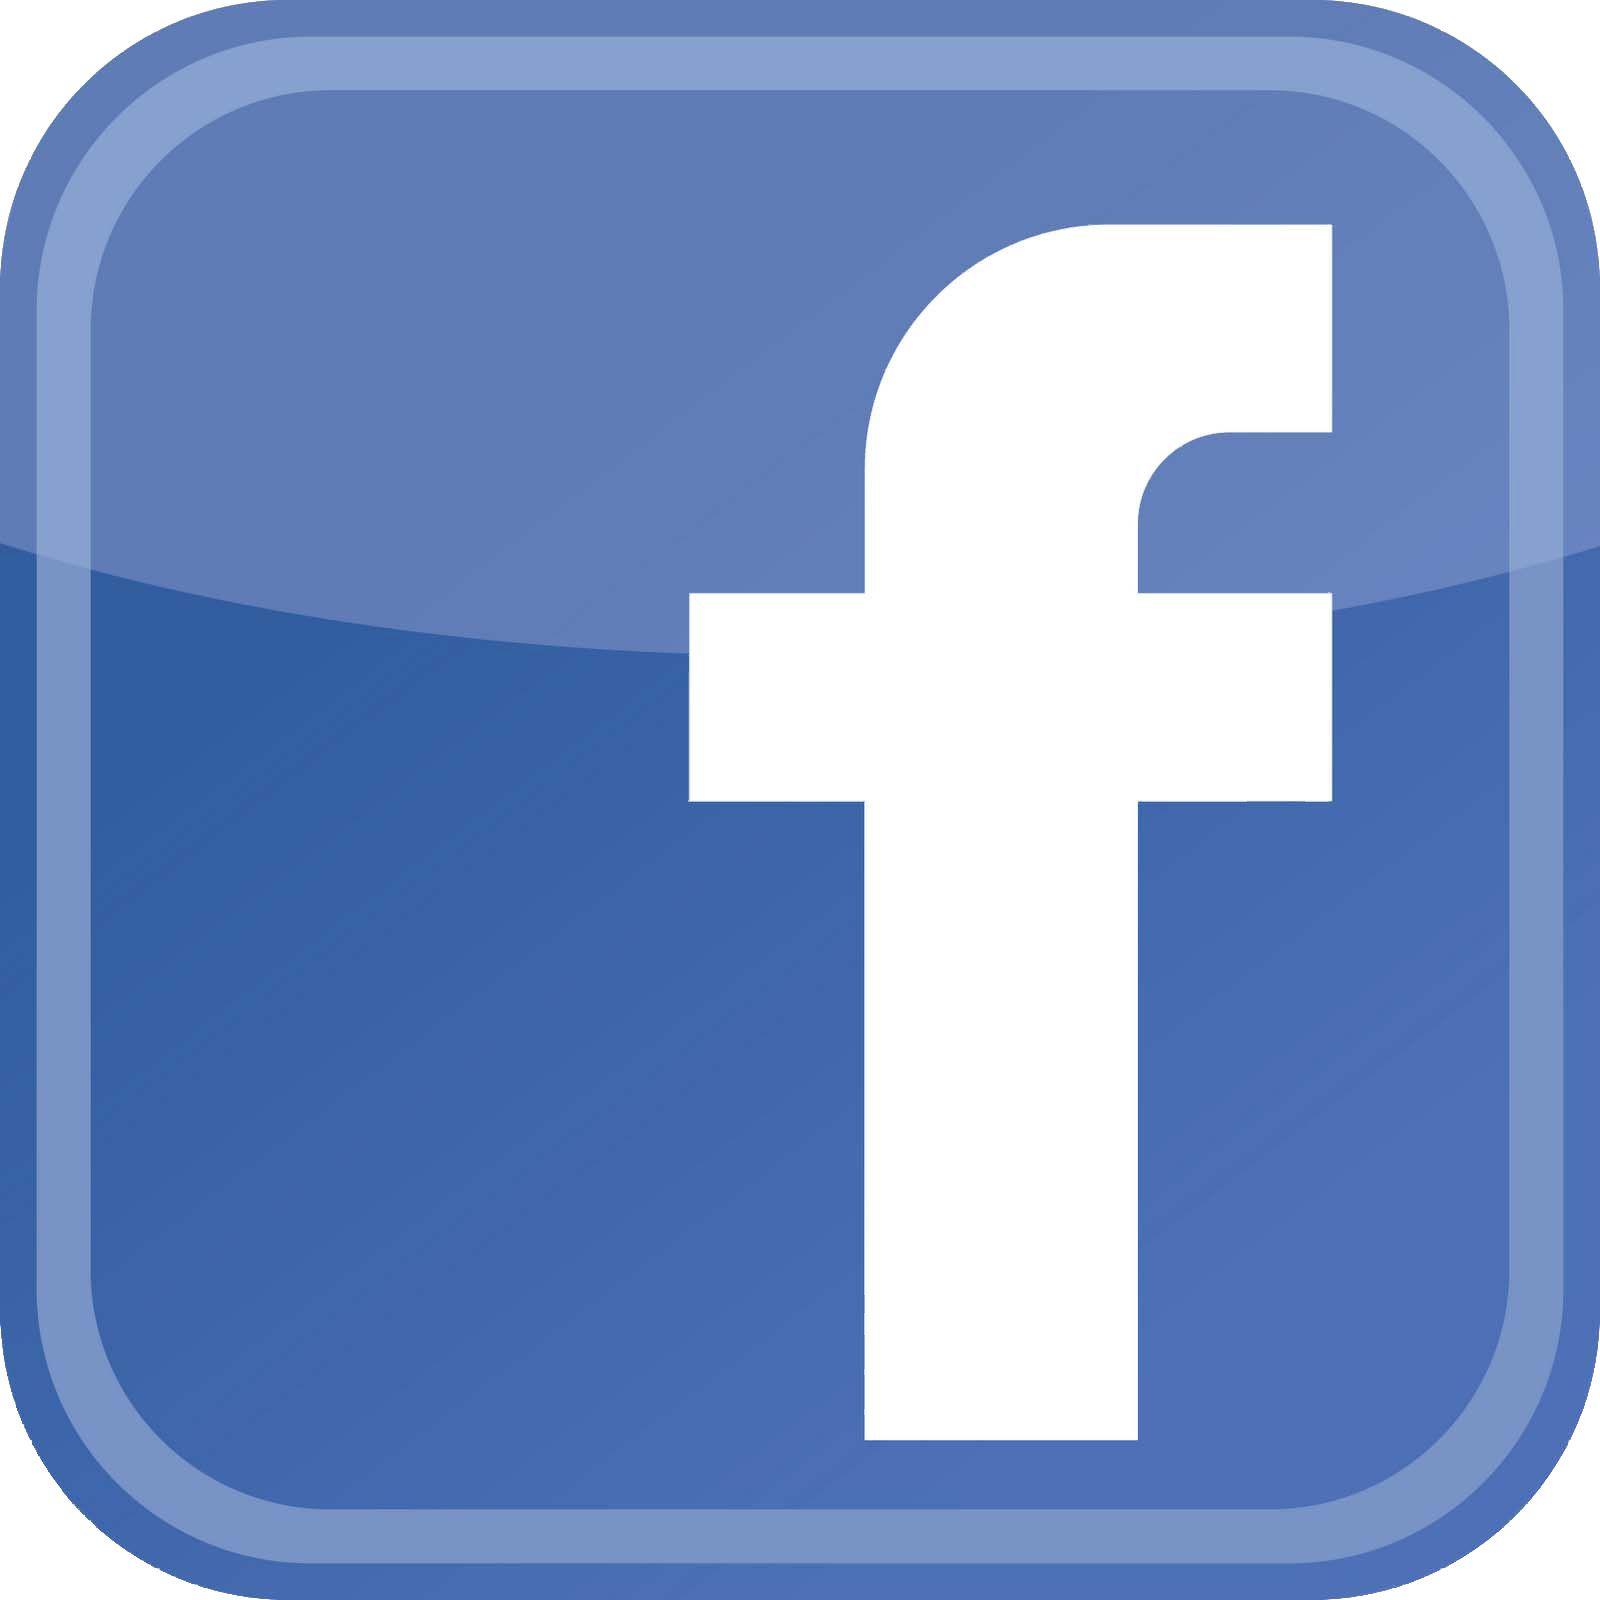 Check in Facebook App Logo - Facebook app Logos